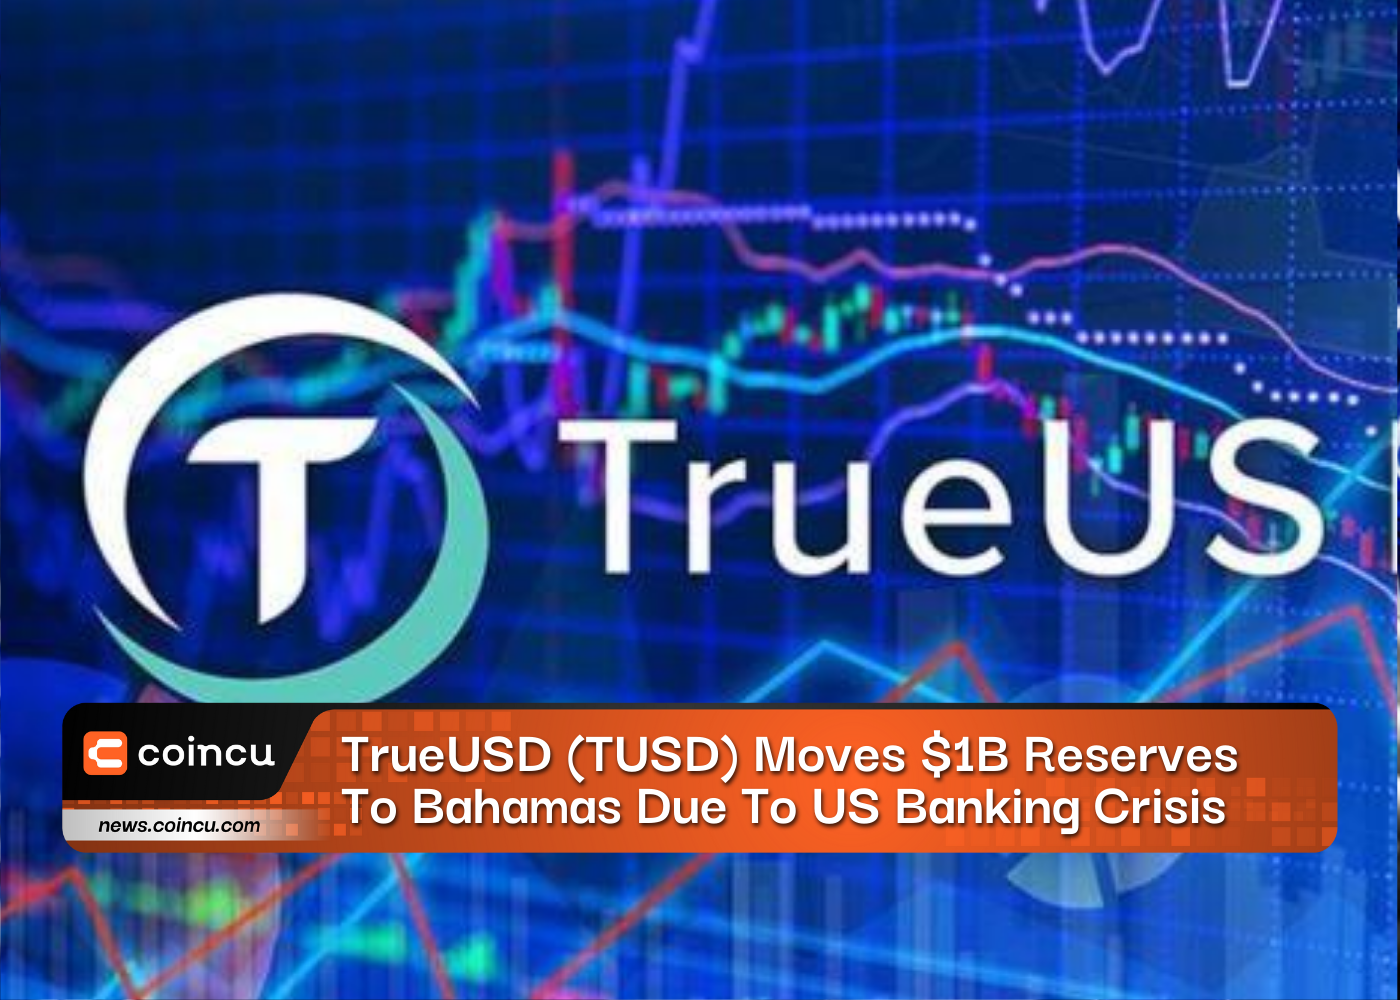 TrueUSD (TUSD) Moves $1 Billion Reserves To Bahamas Due To US Banking Crisis